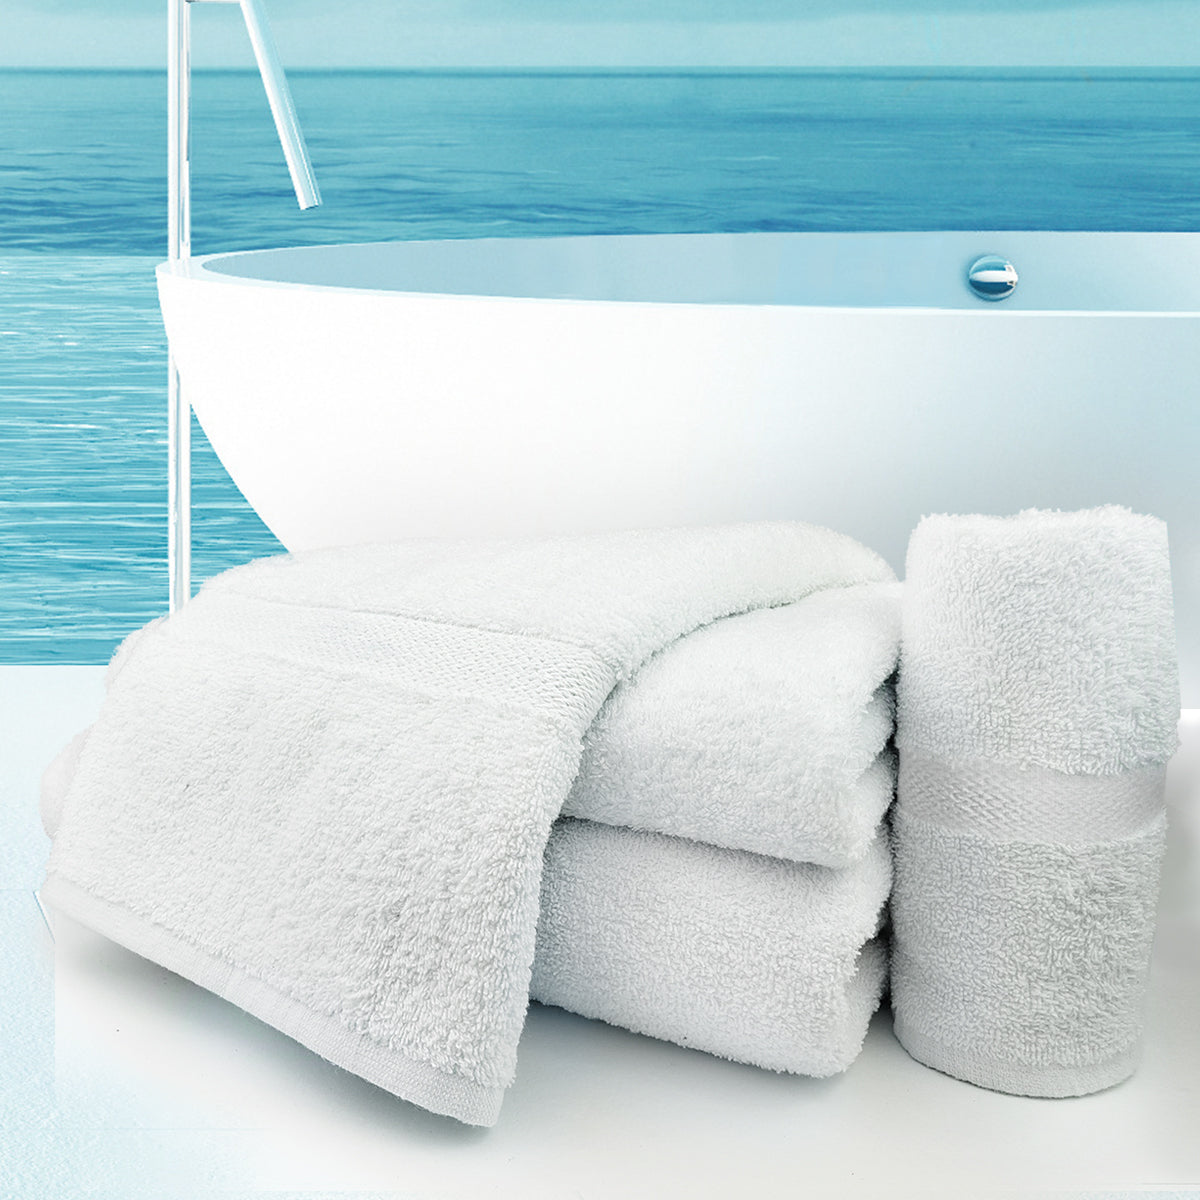 Bathmat - Oxford Regale Towel